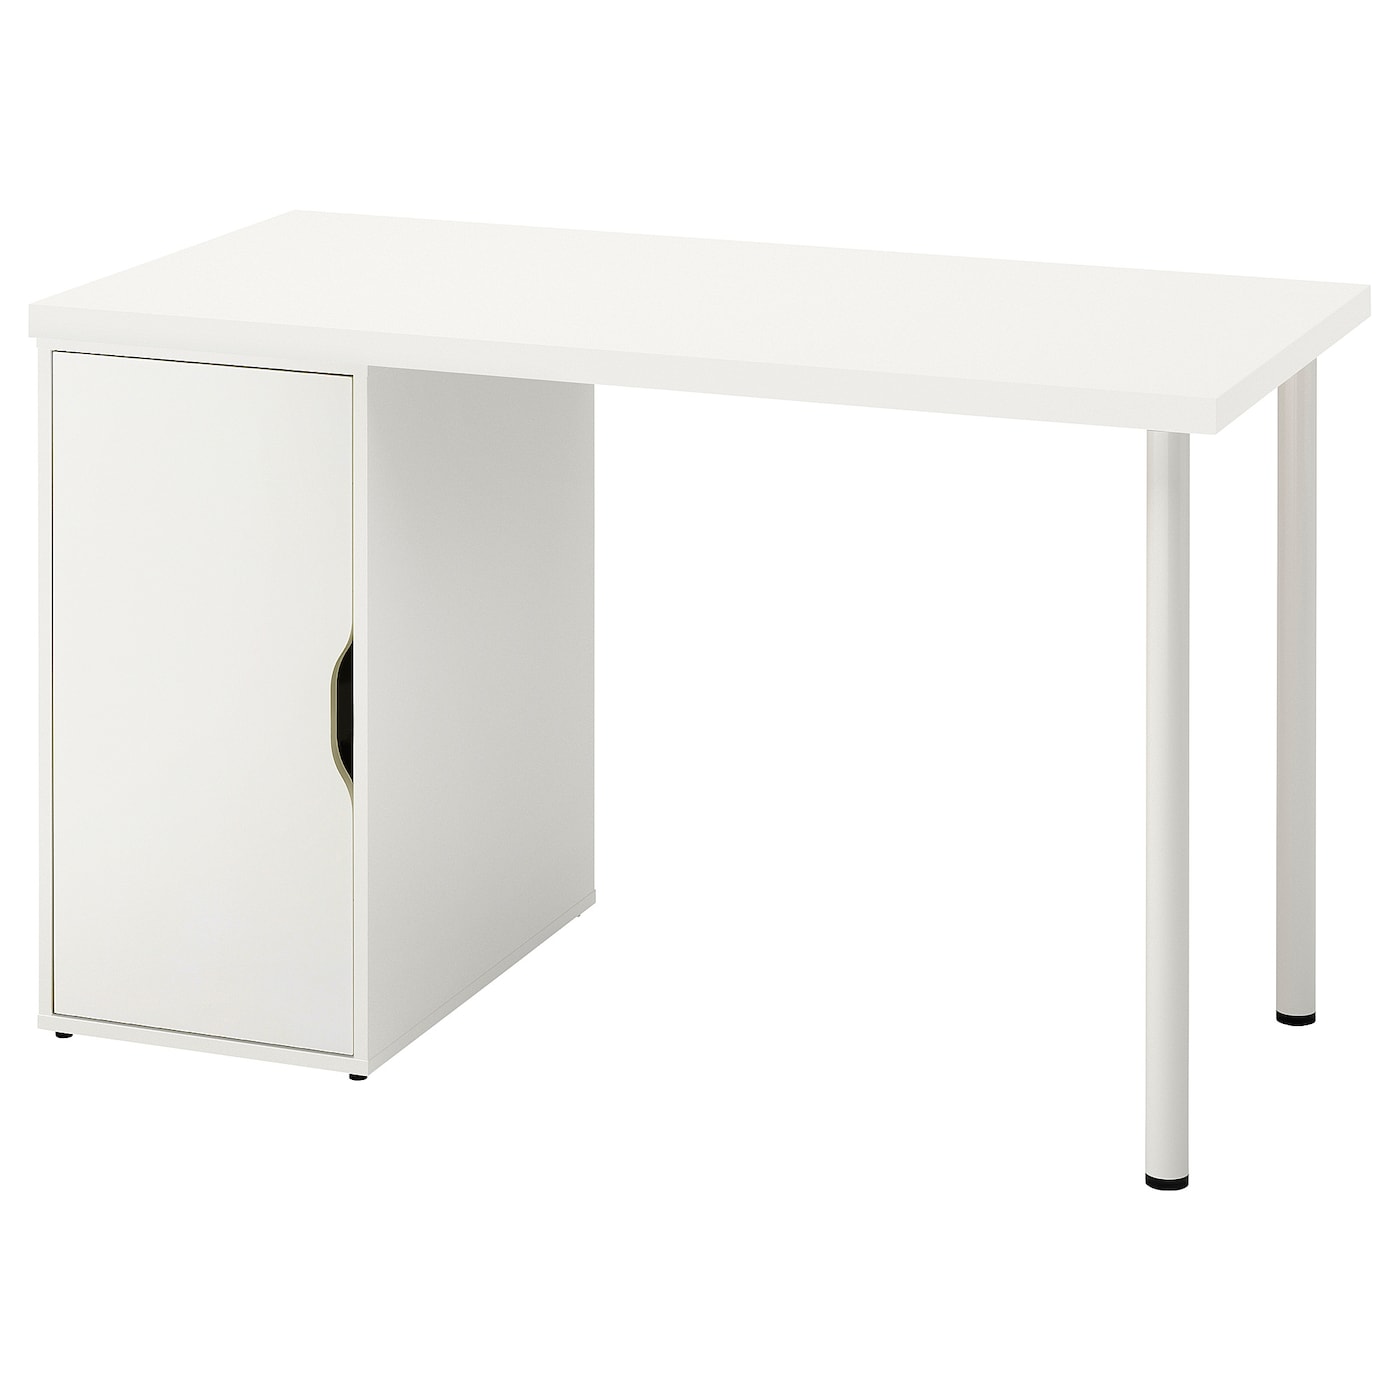 Письменный стол с ящиком - IKEA LAGKAPTEN/ALEX, 120x60 см, белый, АЛЕКС/ЛАГКАПТЕН ИКЕА